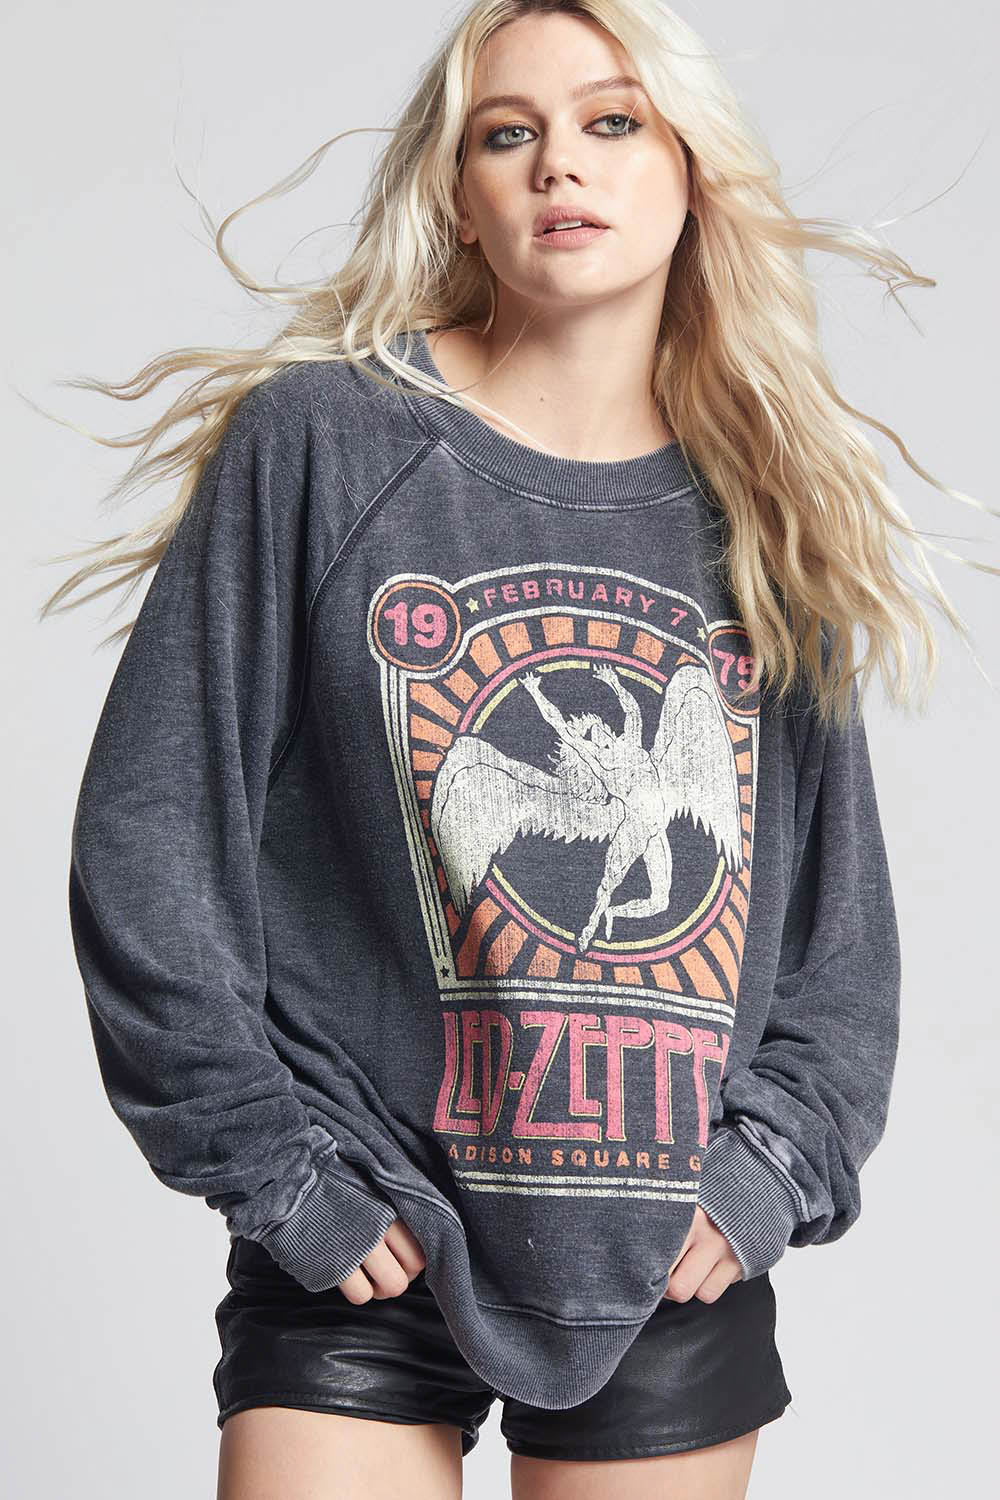 Led Zeppelin 1975 Sweatshirt